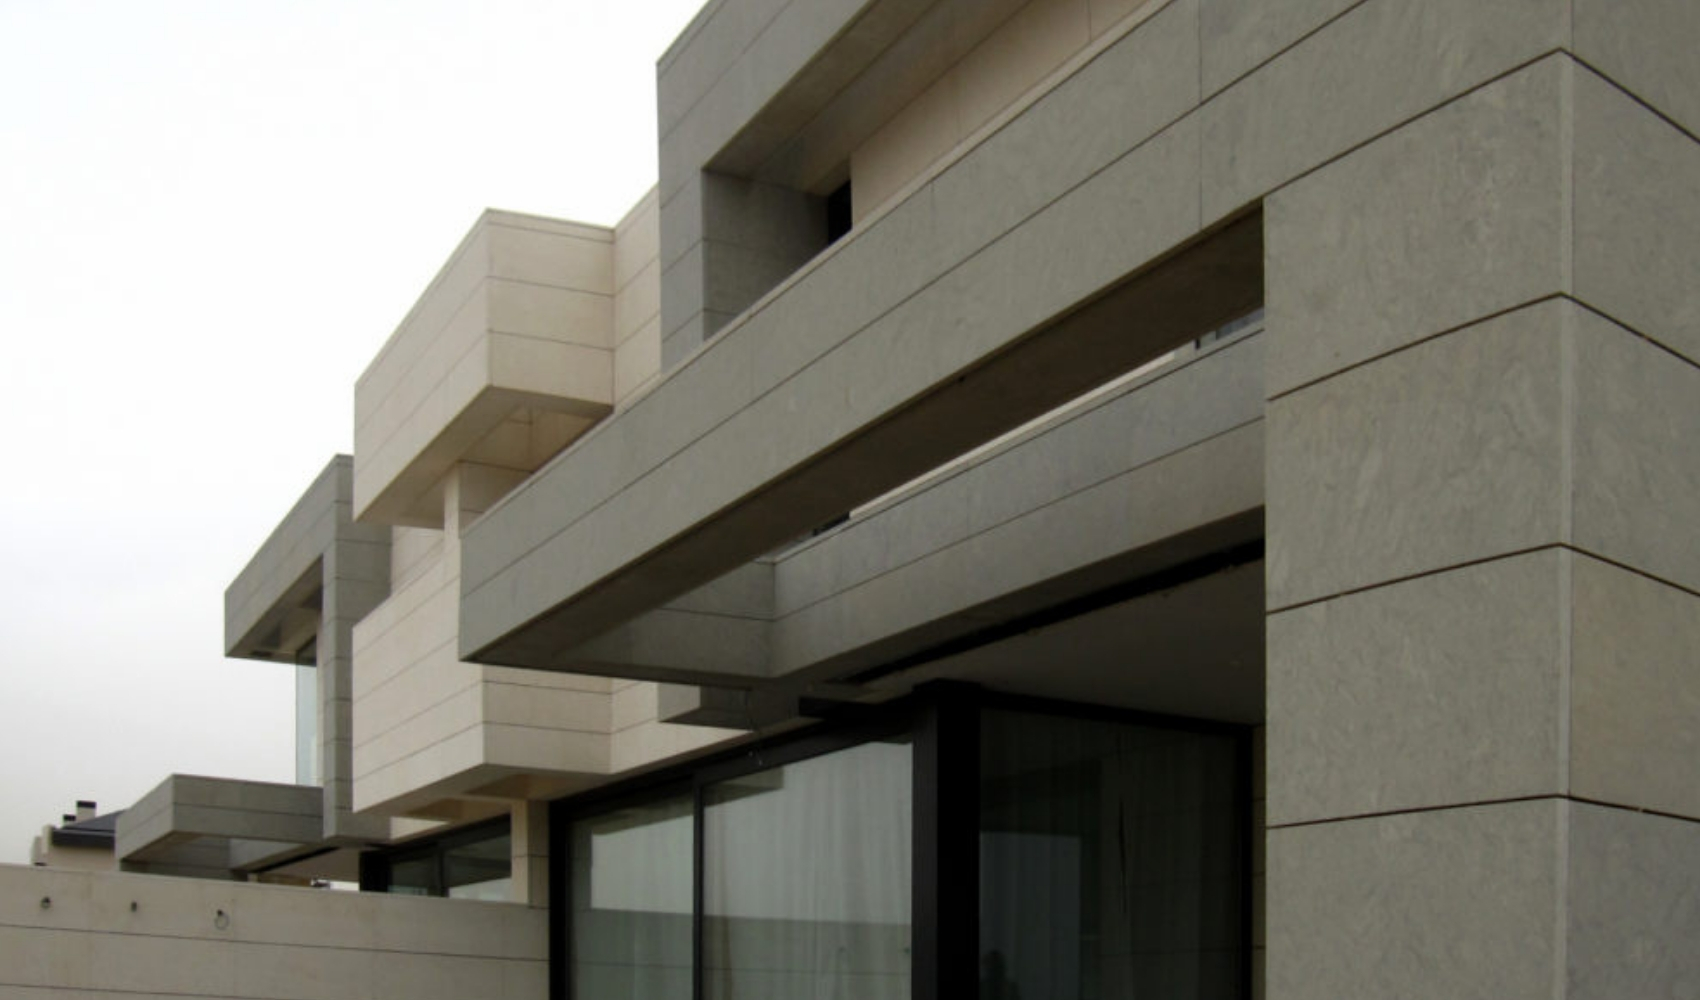 Proyecto de FH2L Arquitectos de 2 viviendas unifamiliares pareadas, Roza Martín, Majadahonda, Madrid.